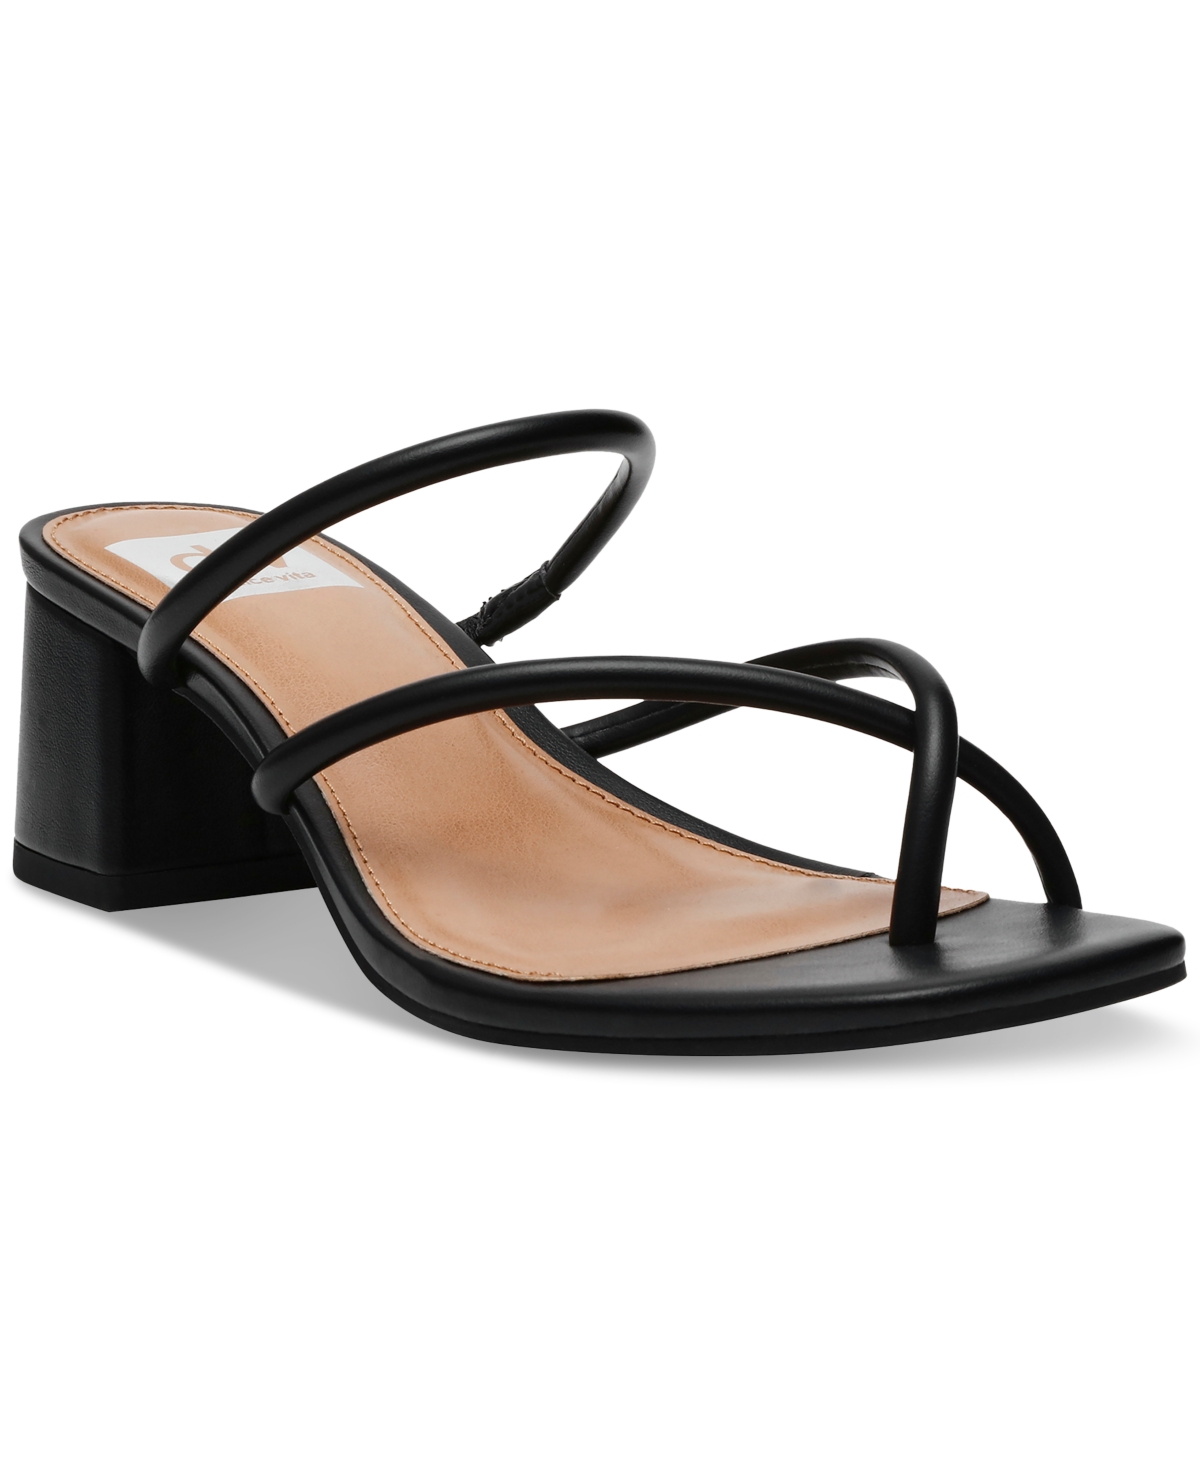 Women's Lumena Strappy Slide Block-Heel Sandals - White